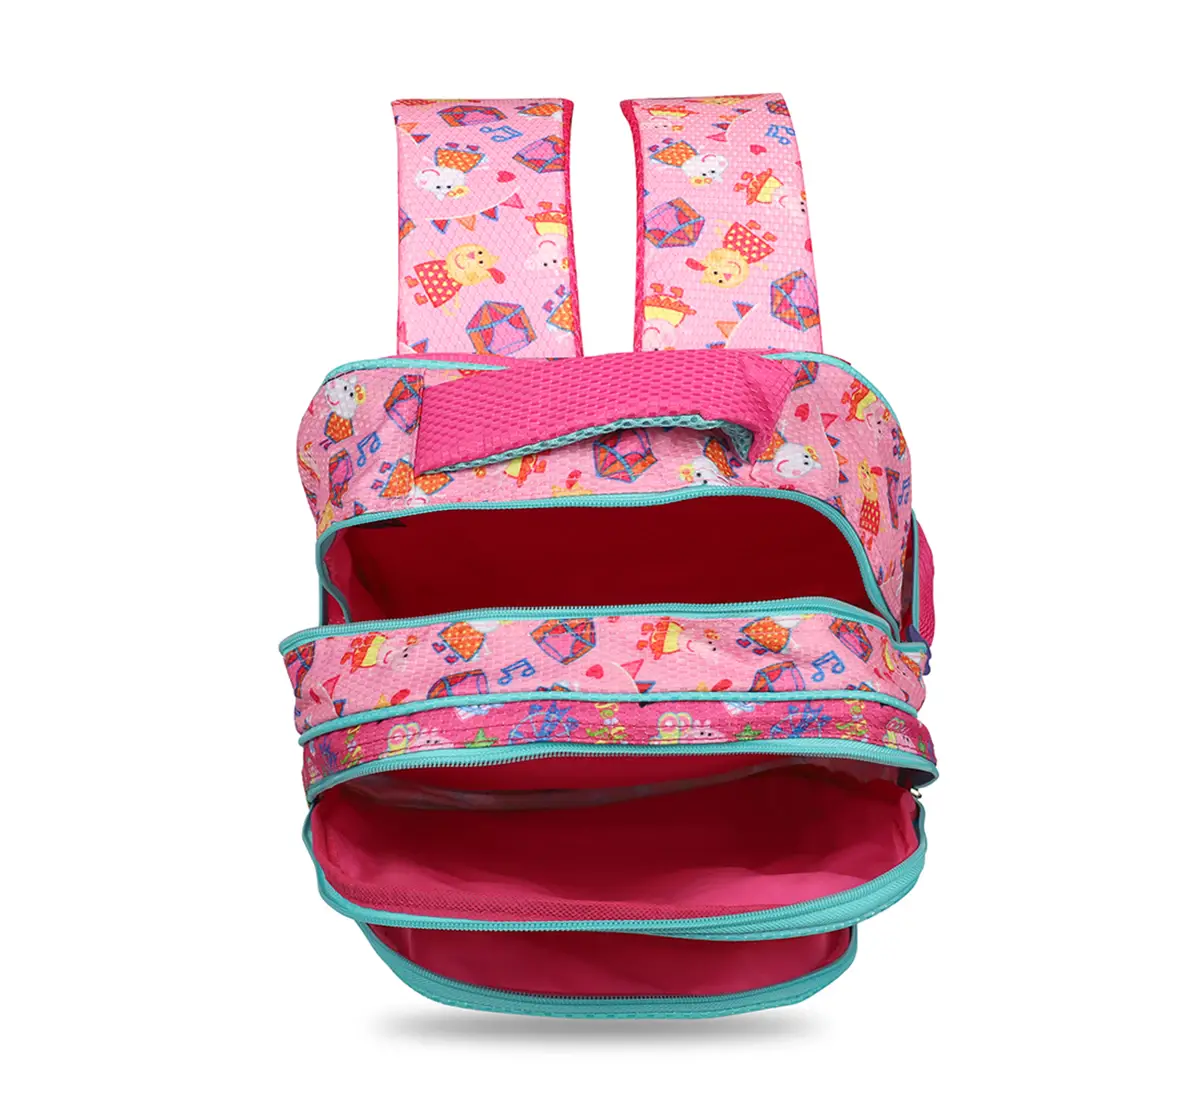 Peppa Pig Festival Selfies School Bag 36 Cm for Kids age 3Y+ (Pink)